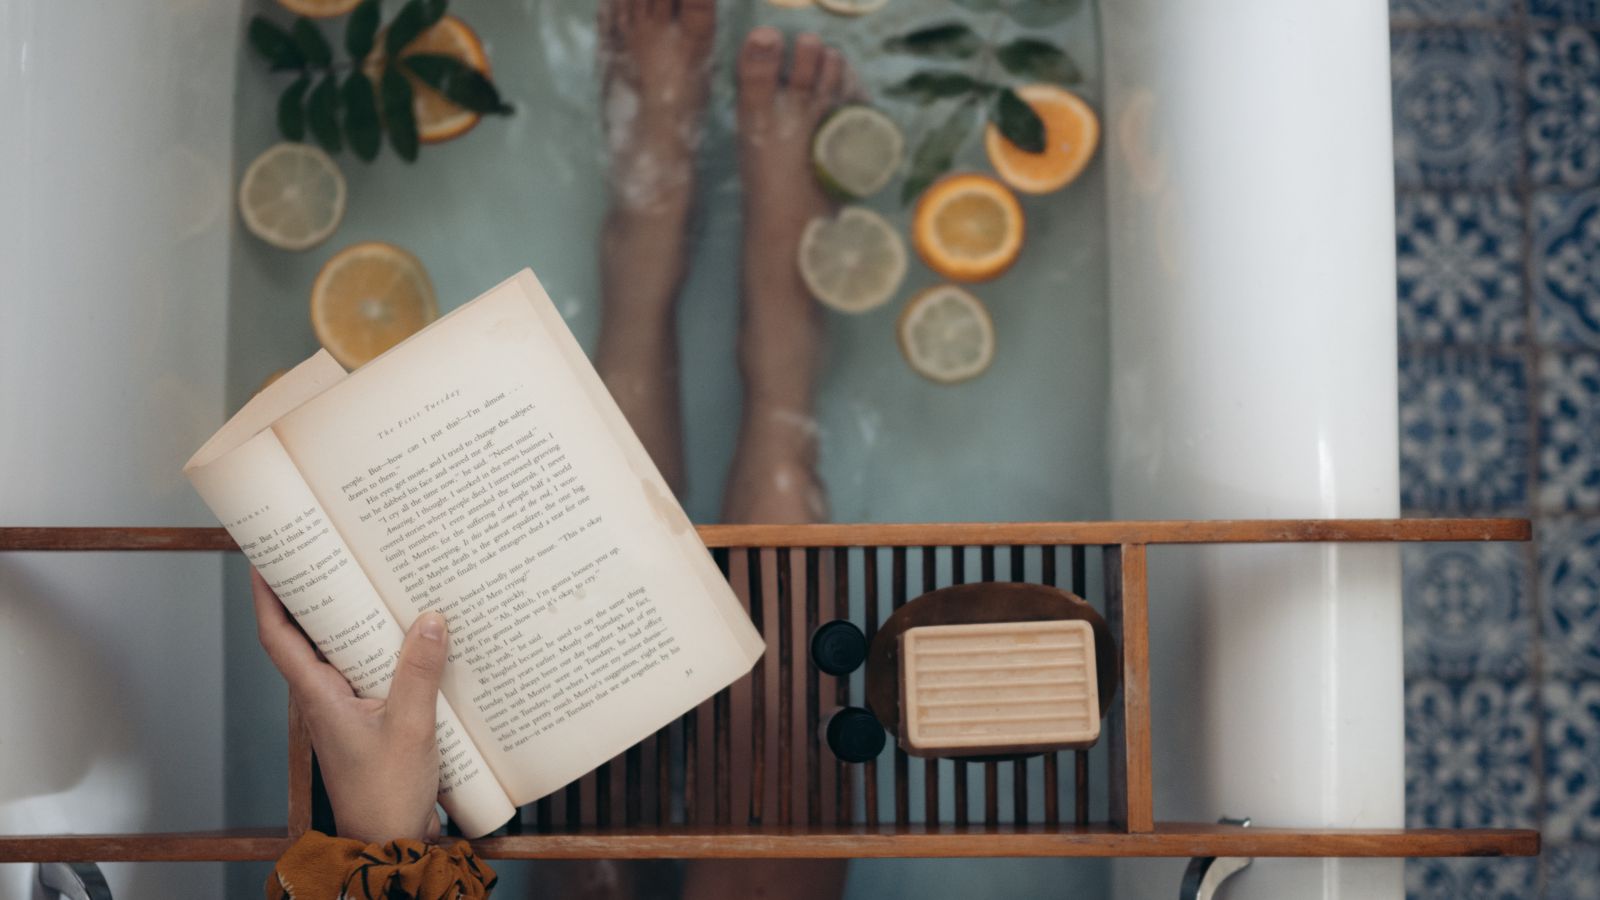 Pessoa sentada em uma banheira com rodelas de limão, lendo um livro.